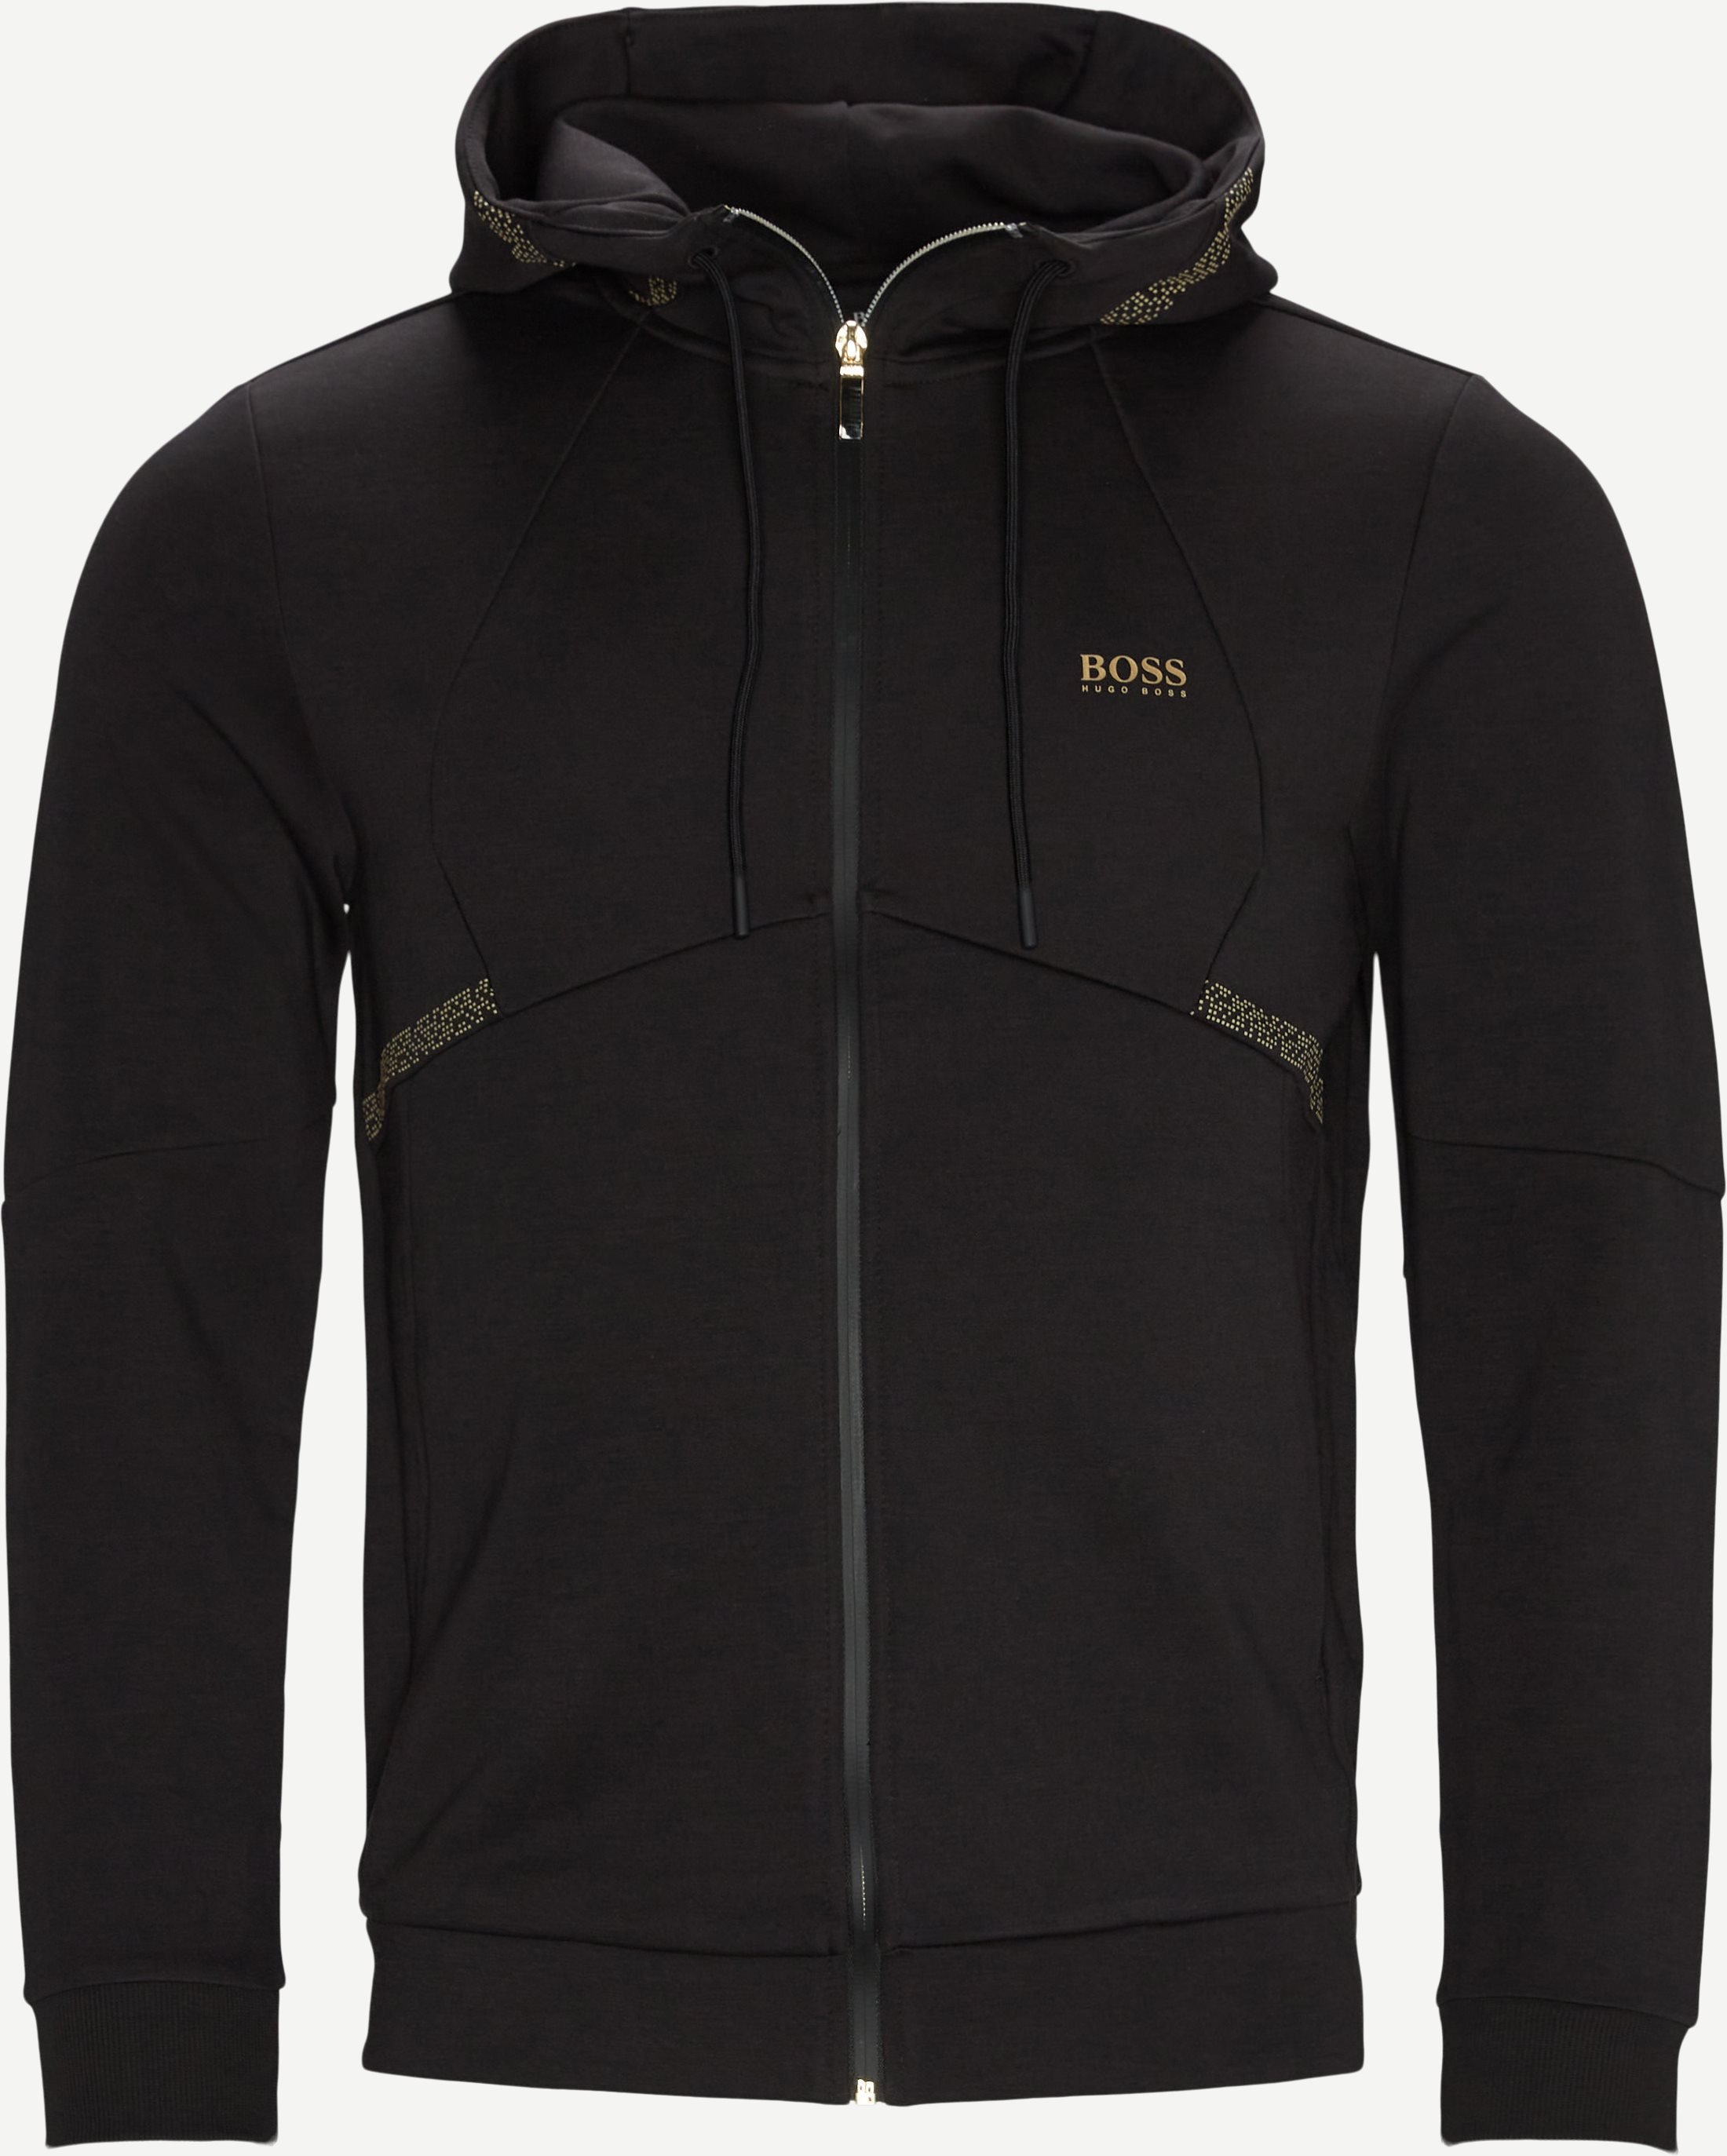 Saggy2 Pixel Hoodie - Sweatshirts - Regular fit - Black